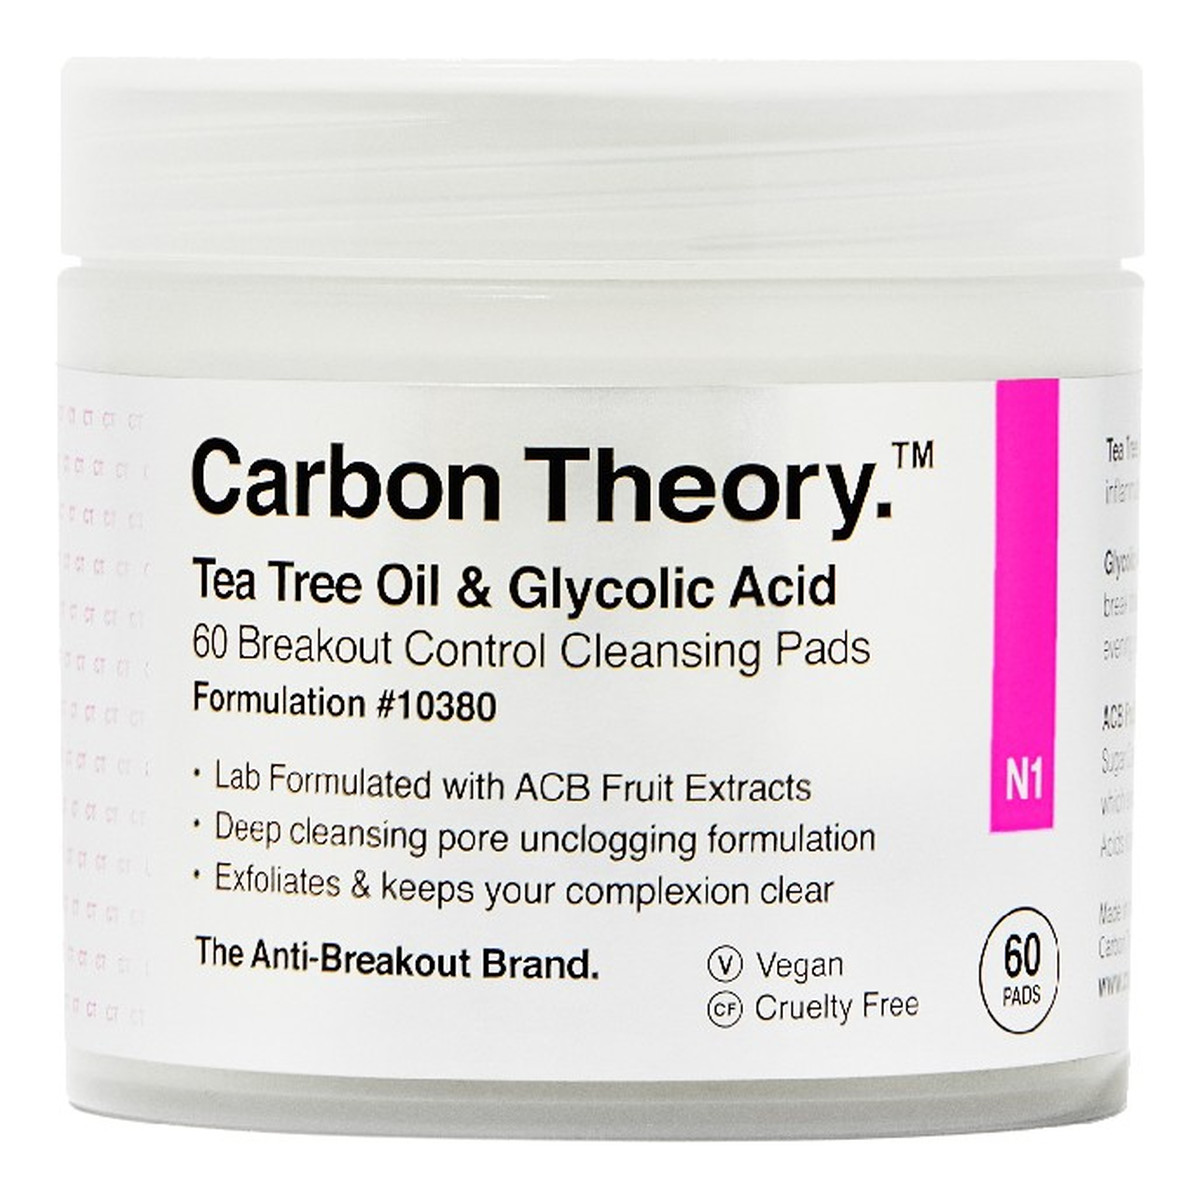 Carbon Theory Tea Tree Oil & Glycolic Acid Płatki oczyszczające do twarzy Cleasing Pads